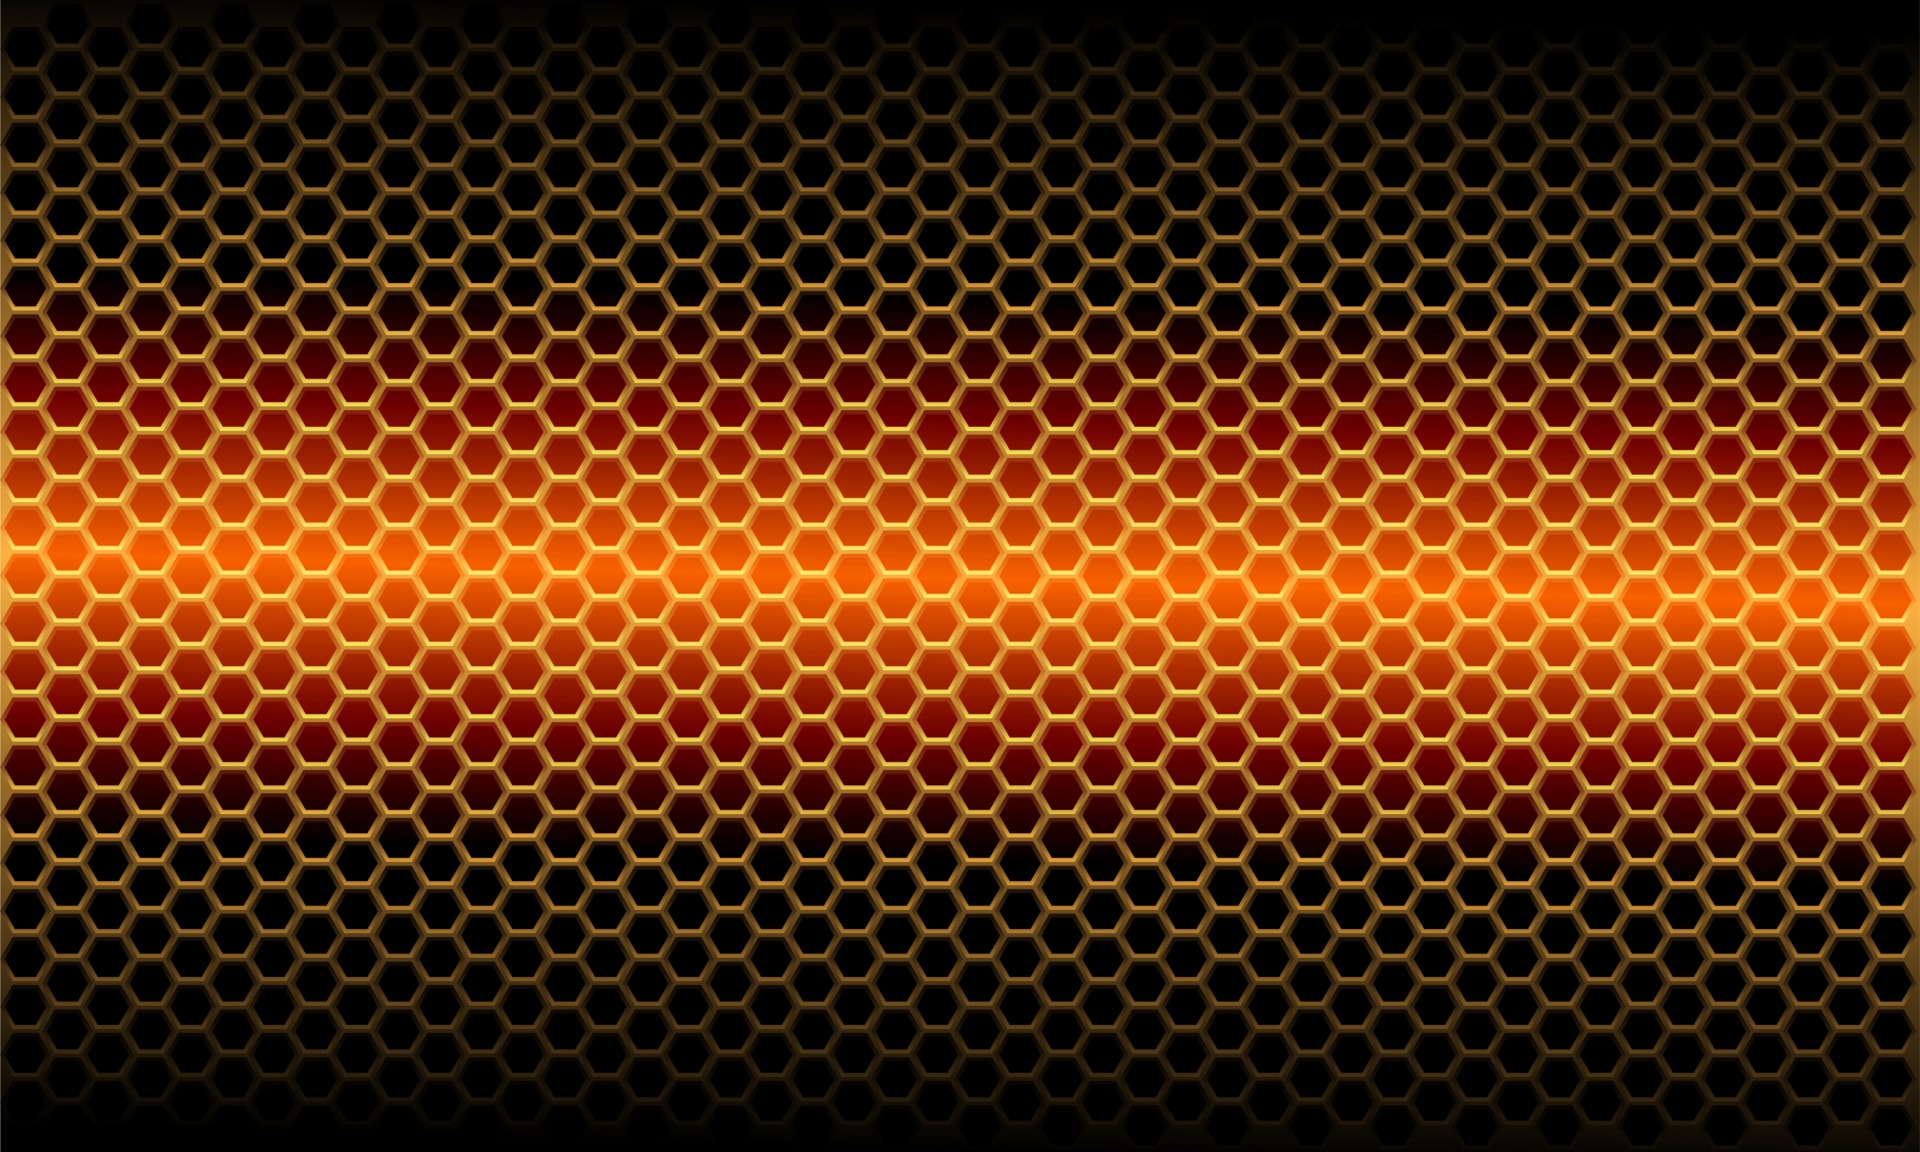 Mẫu lưới tứ giác cam kim loại ánh sáng trên nền đen sẽ giúp cho thiết kế của bạn nổi bật. Hình ảnh kết hợp giữa màu cam và kim loại tạo ra một hiệu ứng độc đáo và thu hút. Hãy khám phá để làm cho thiết kế của bạn nổi bật và đẹp mắt hơn.